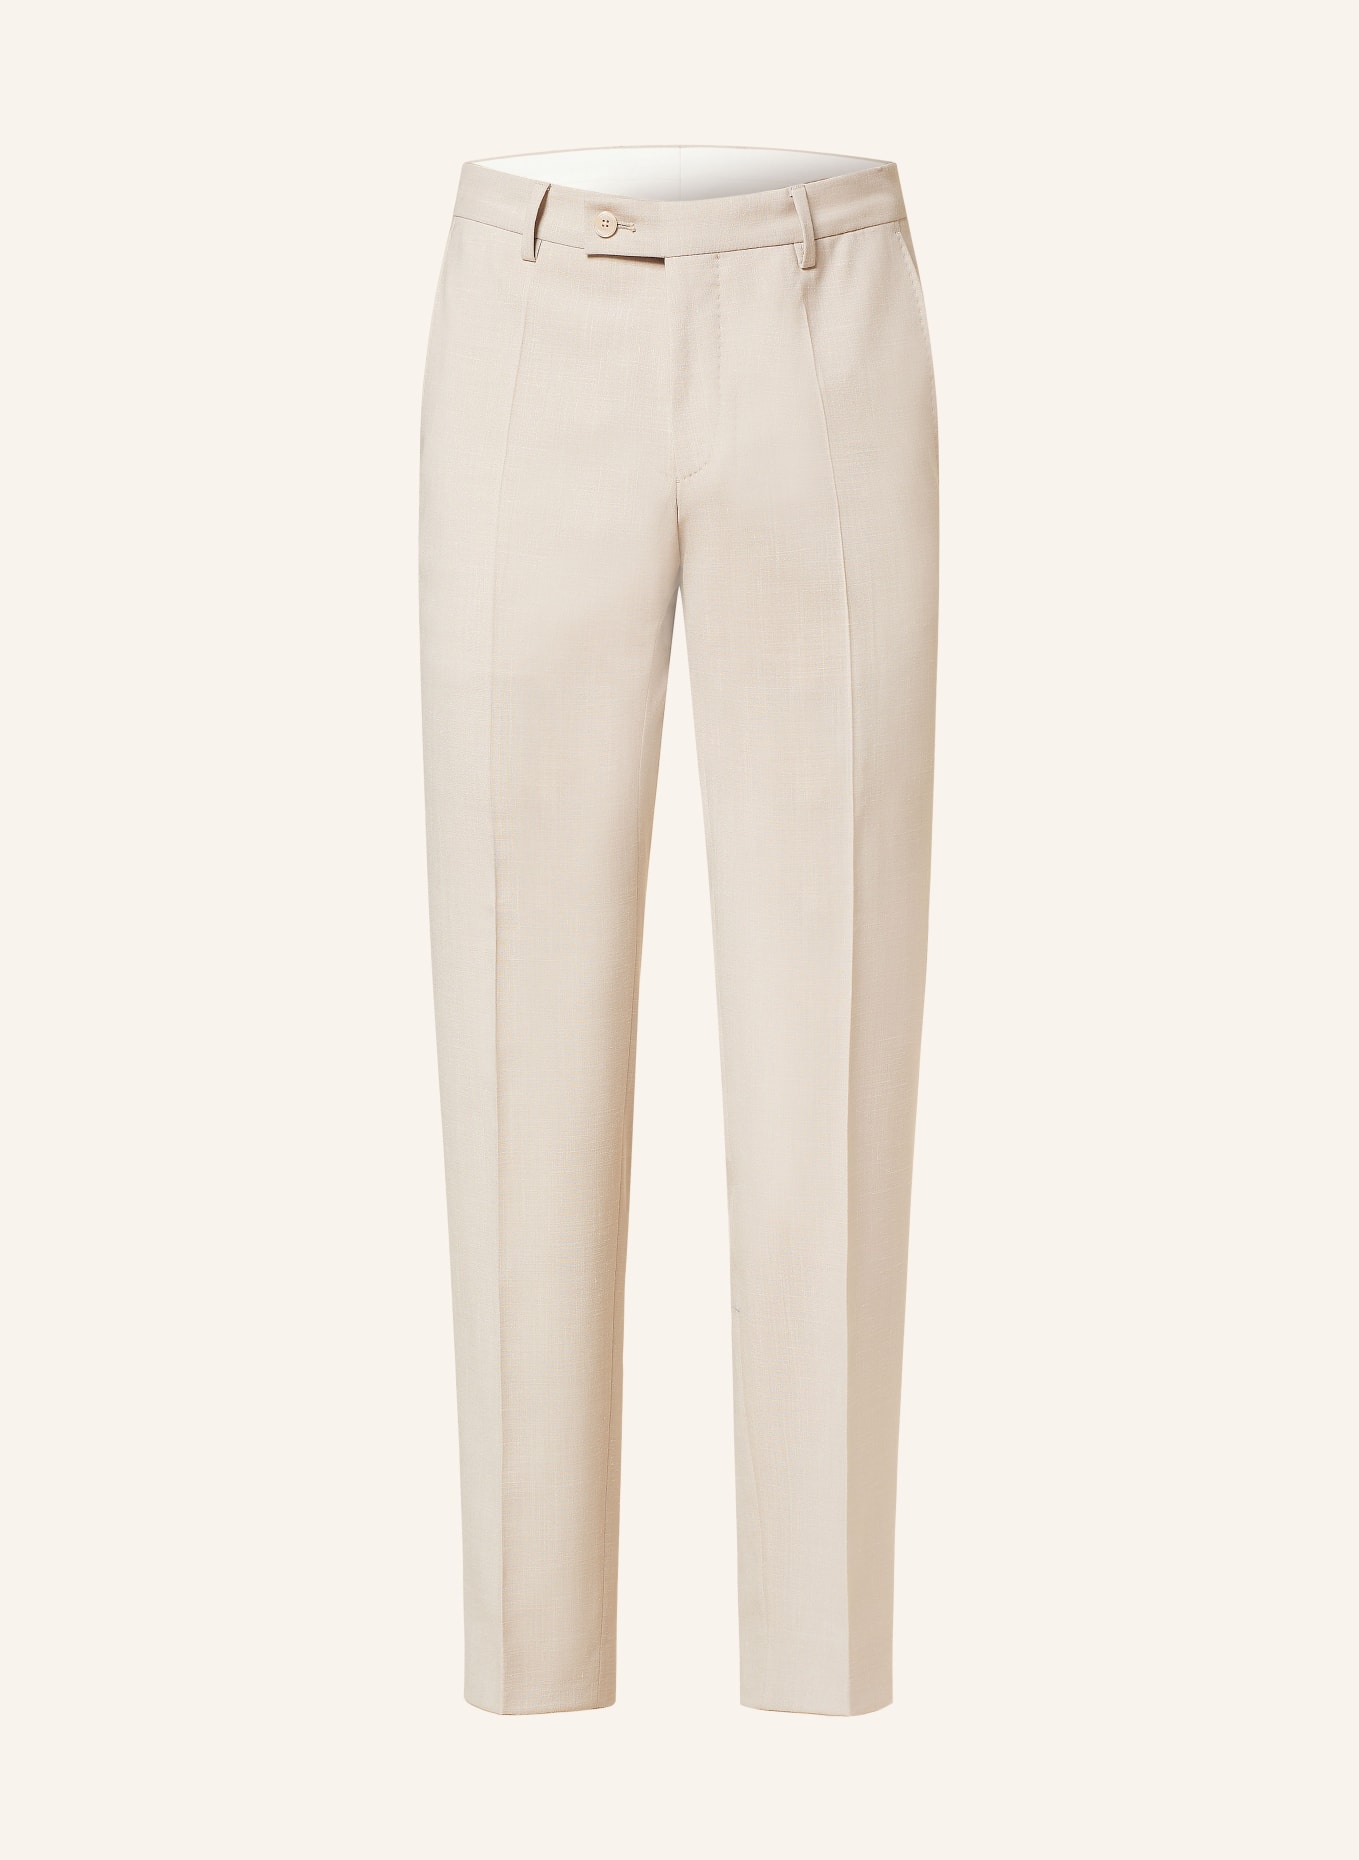 BALDESSARINI Anzughose Extra Slim Fit, Farbe: 8520 Irish Cream Melange (Bild 1)